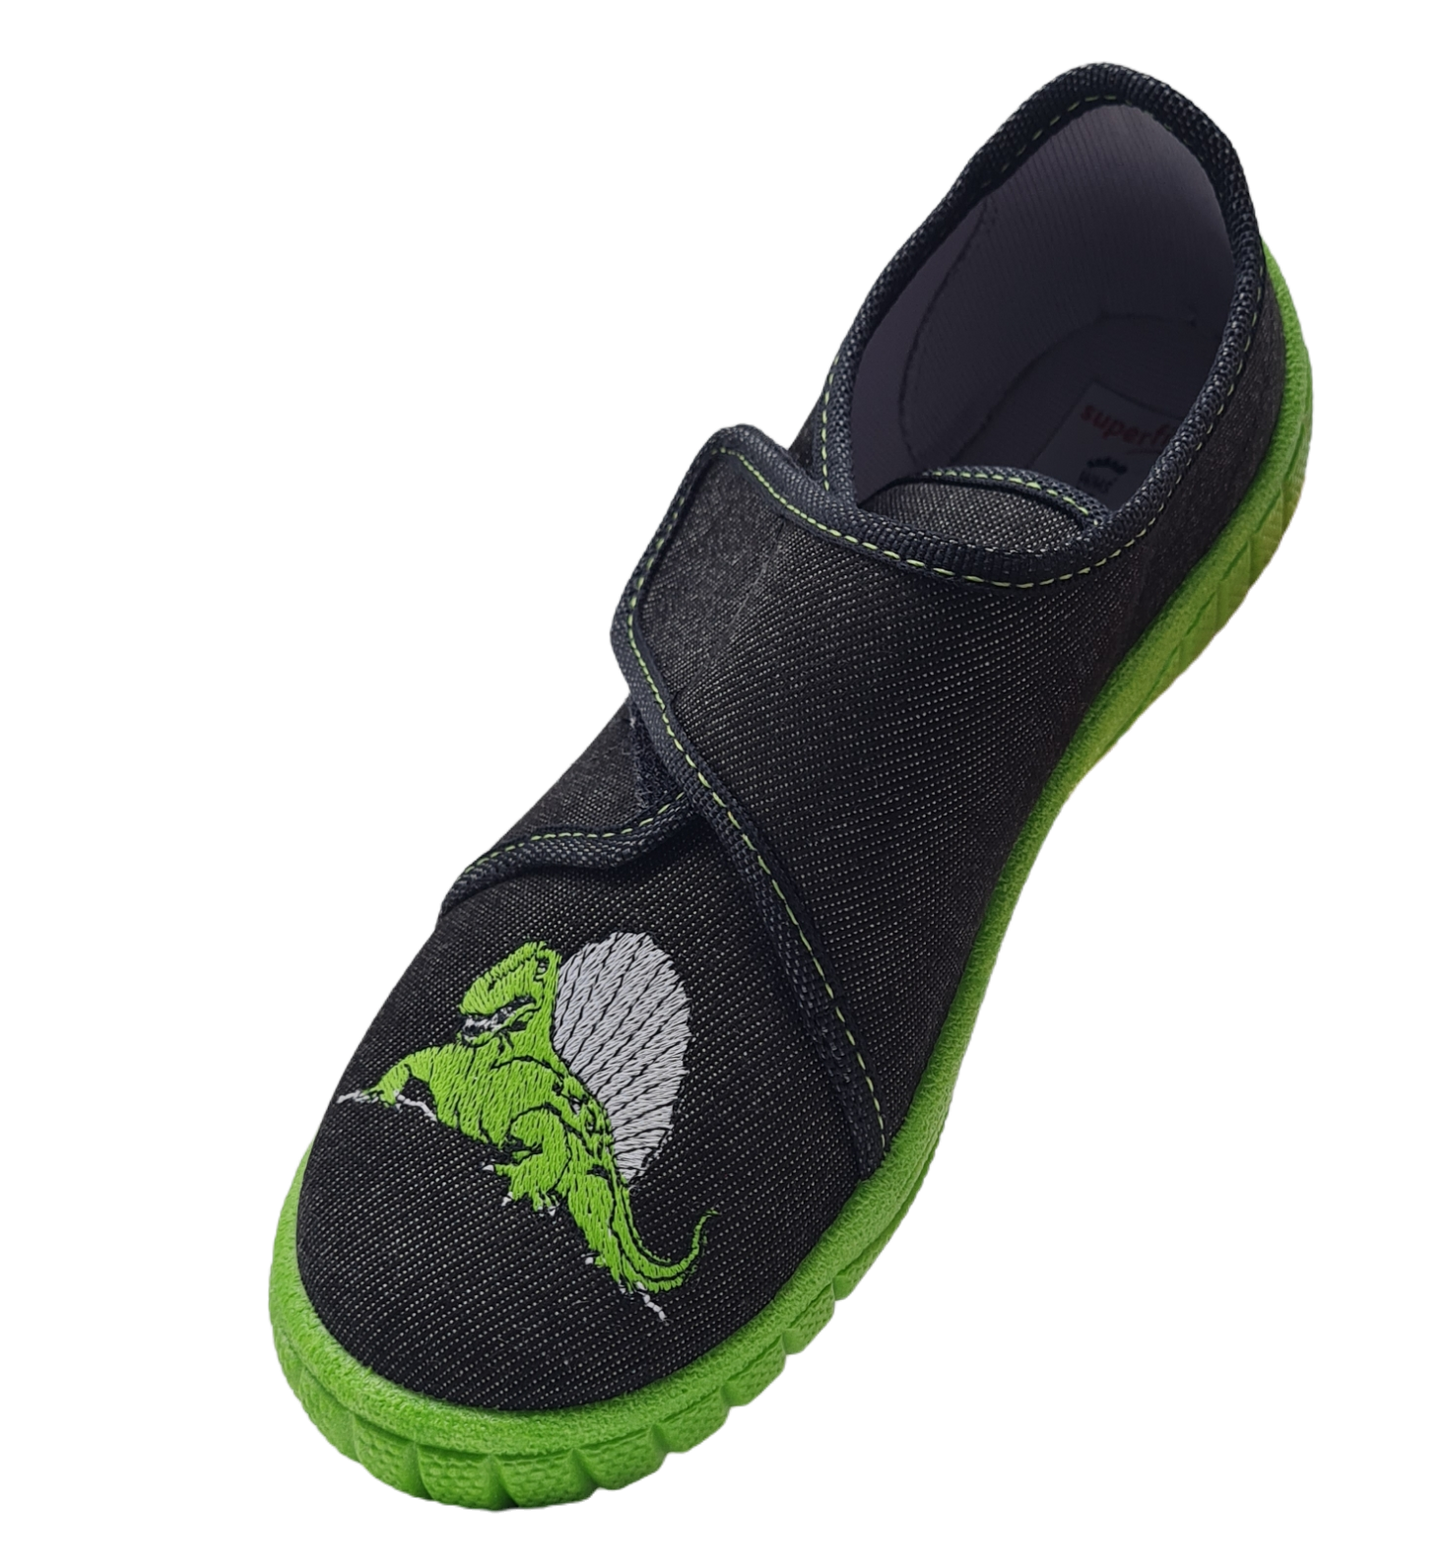 Pantofola Dino 1-8000278-0030